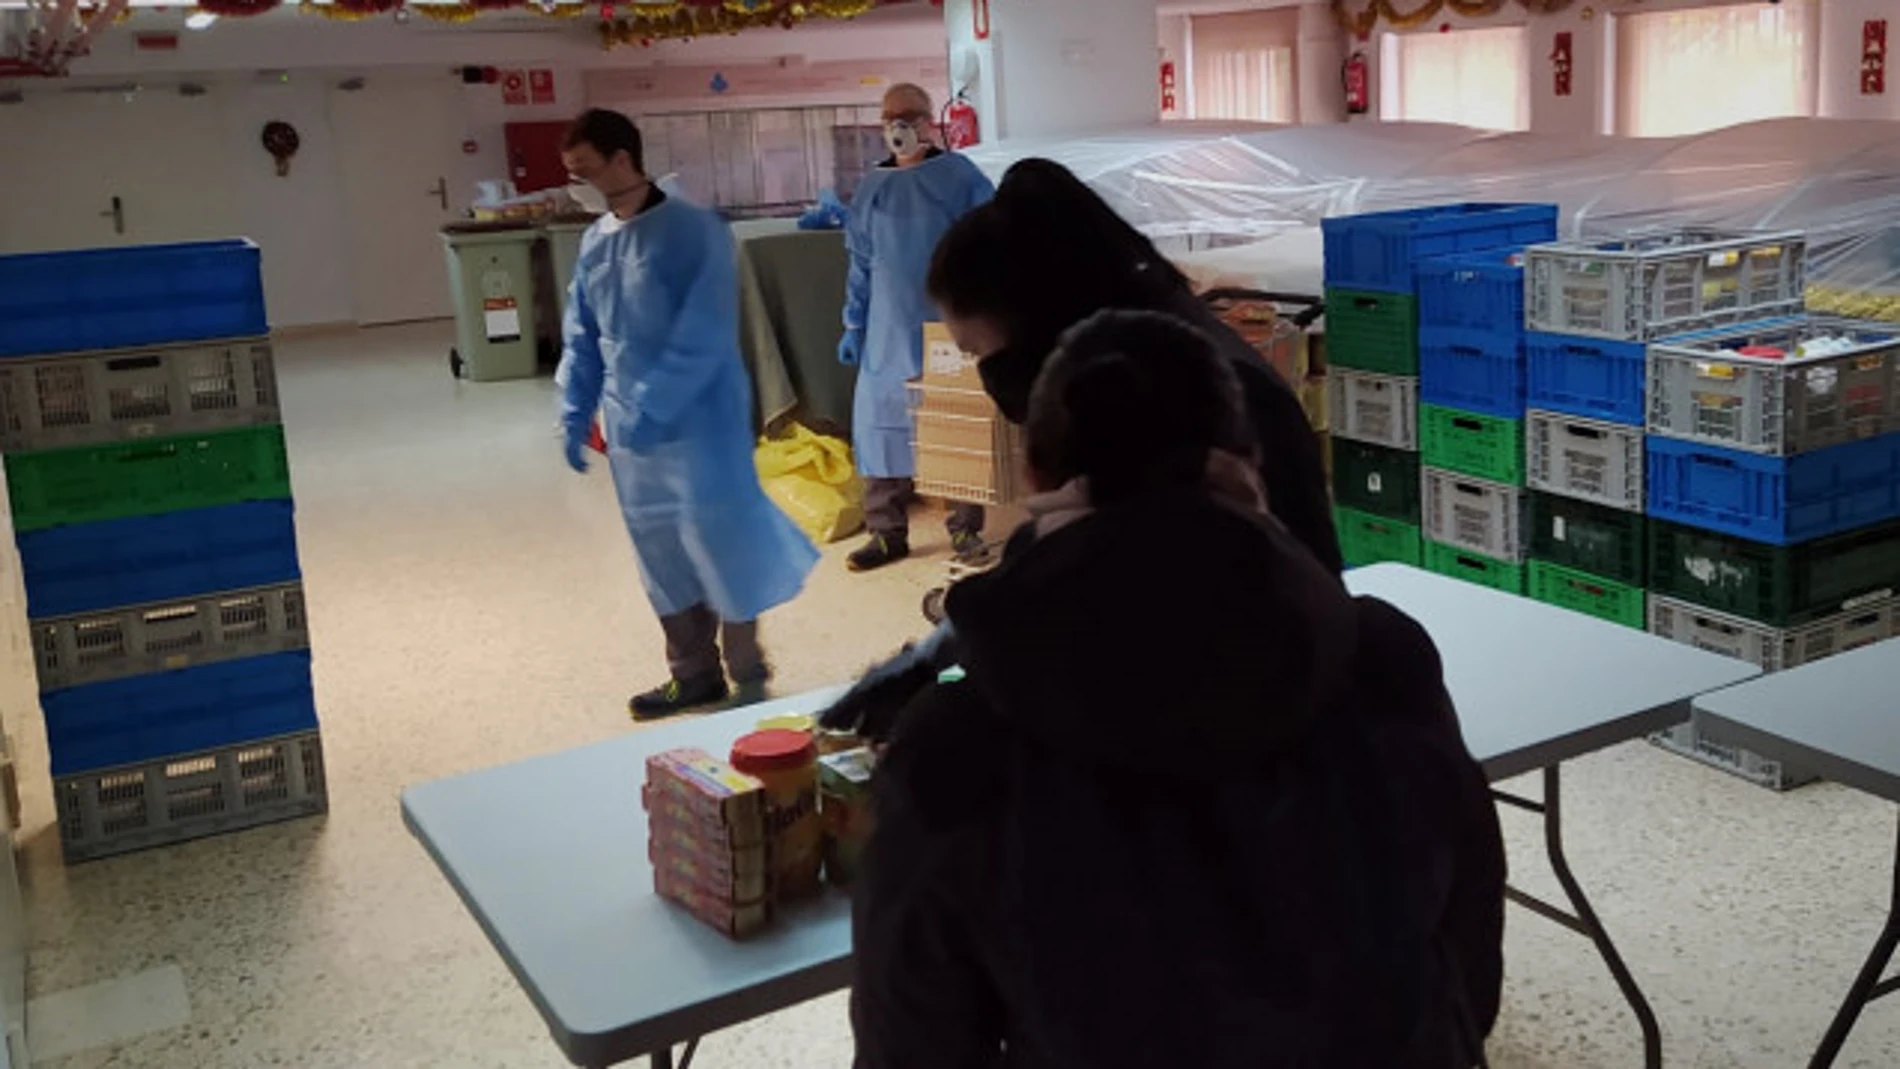 Voluntarios de San Juan de Dios atienden a las personas sin hogar allí refugiadas las 24 horas por el coronavirus